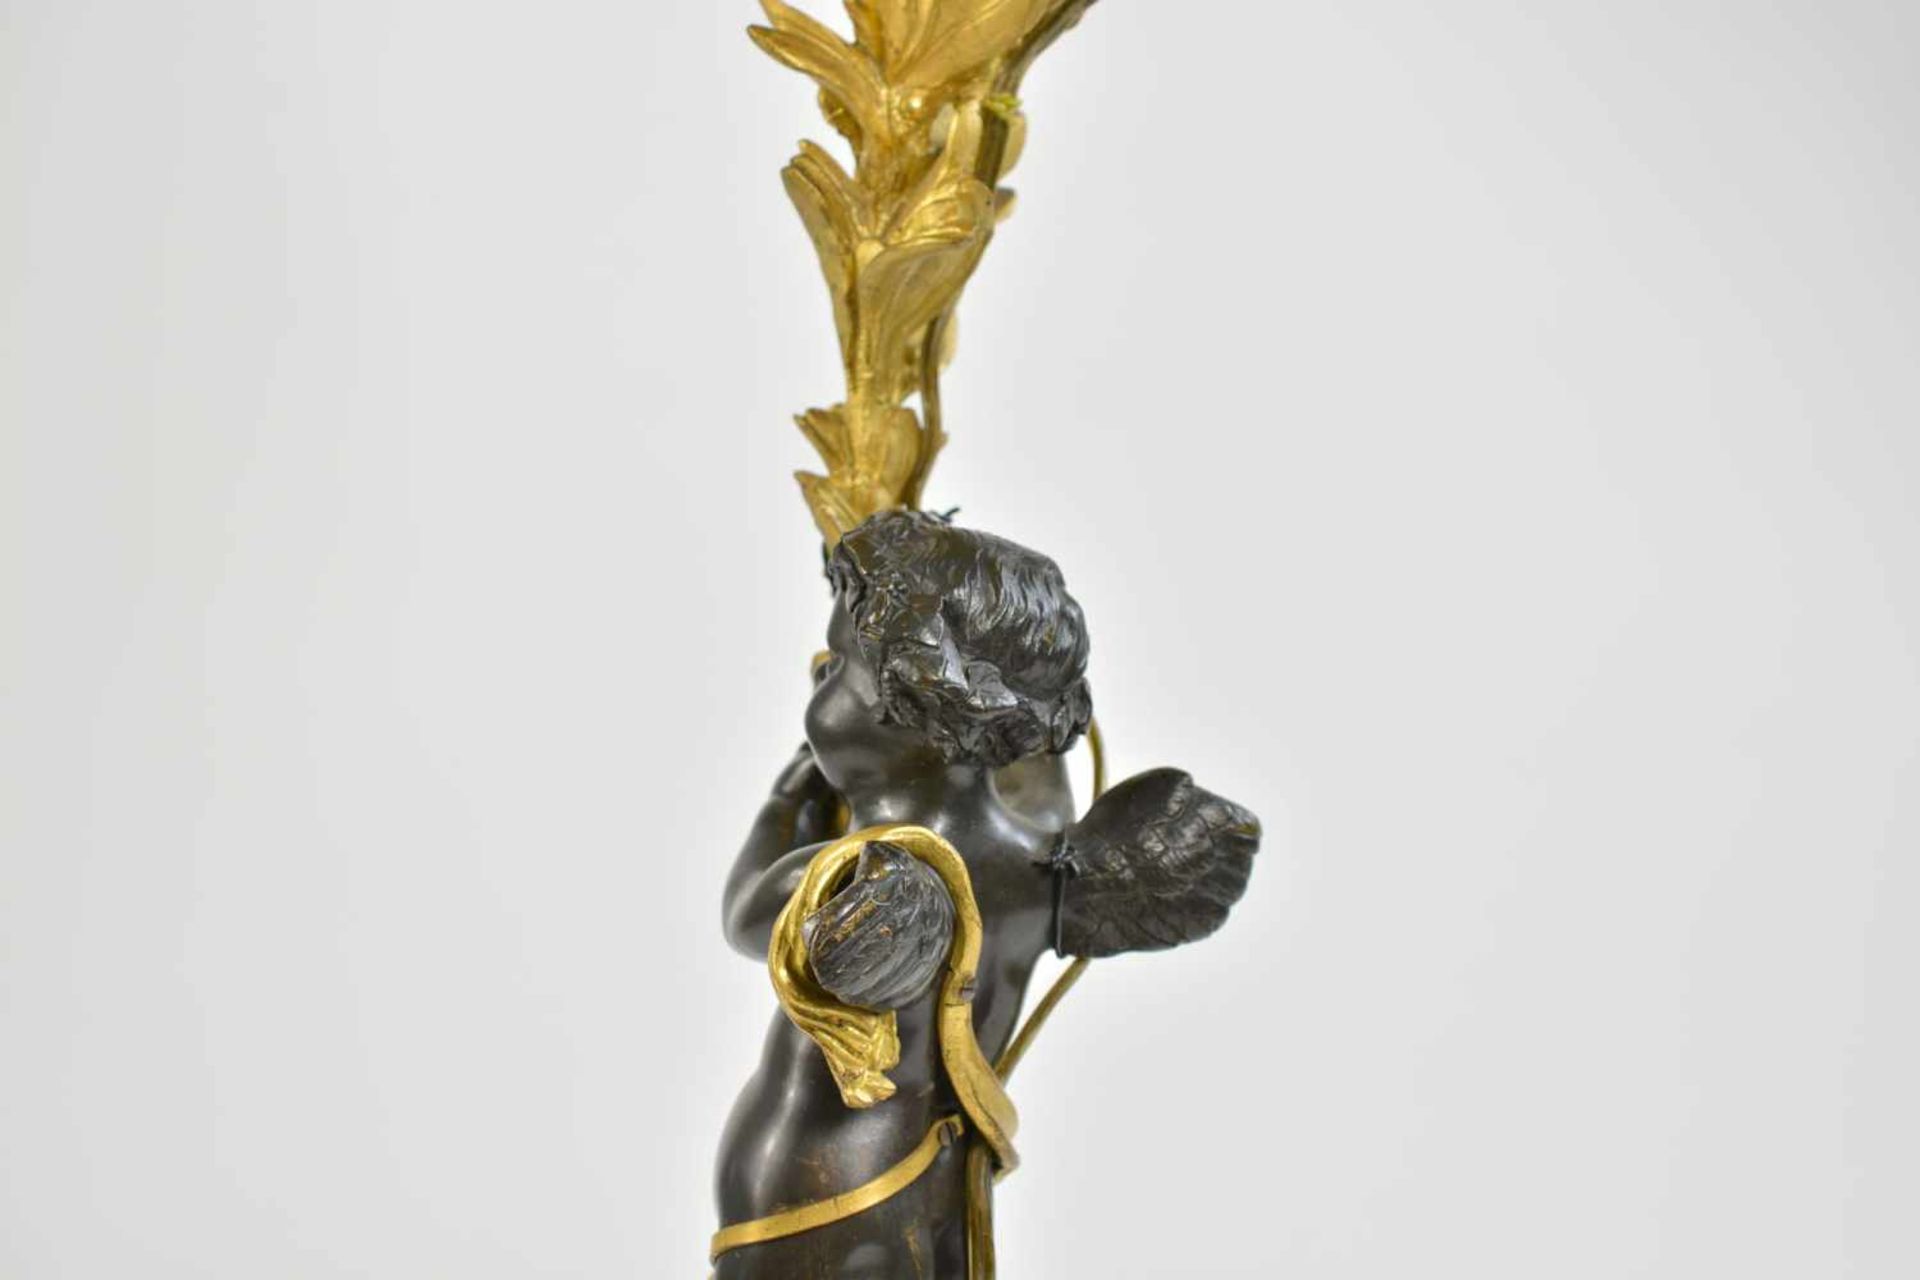 Lampe im Empire-Stil mit BronzefigurFrankreich, Ende 19. Jh., Bronze, vergoldet, Figur schwarz - Image 2 of 2